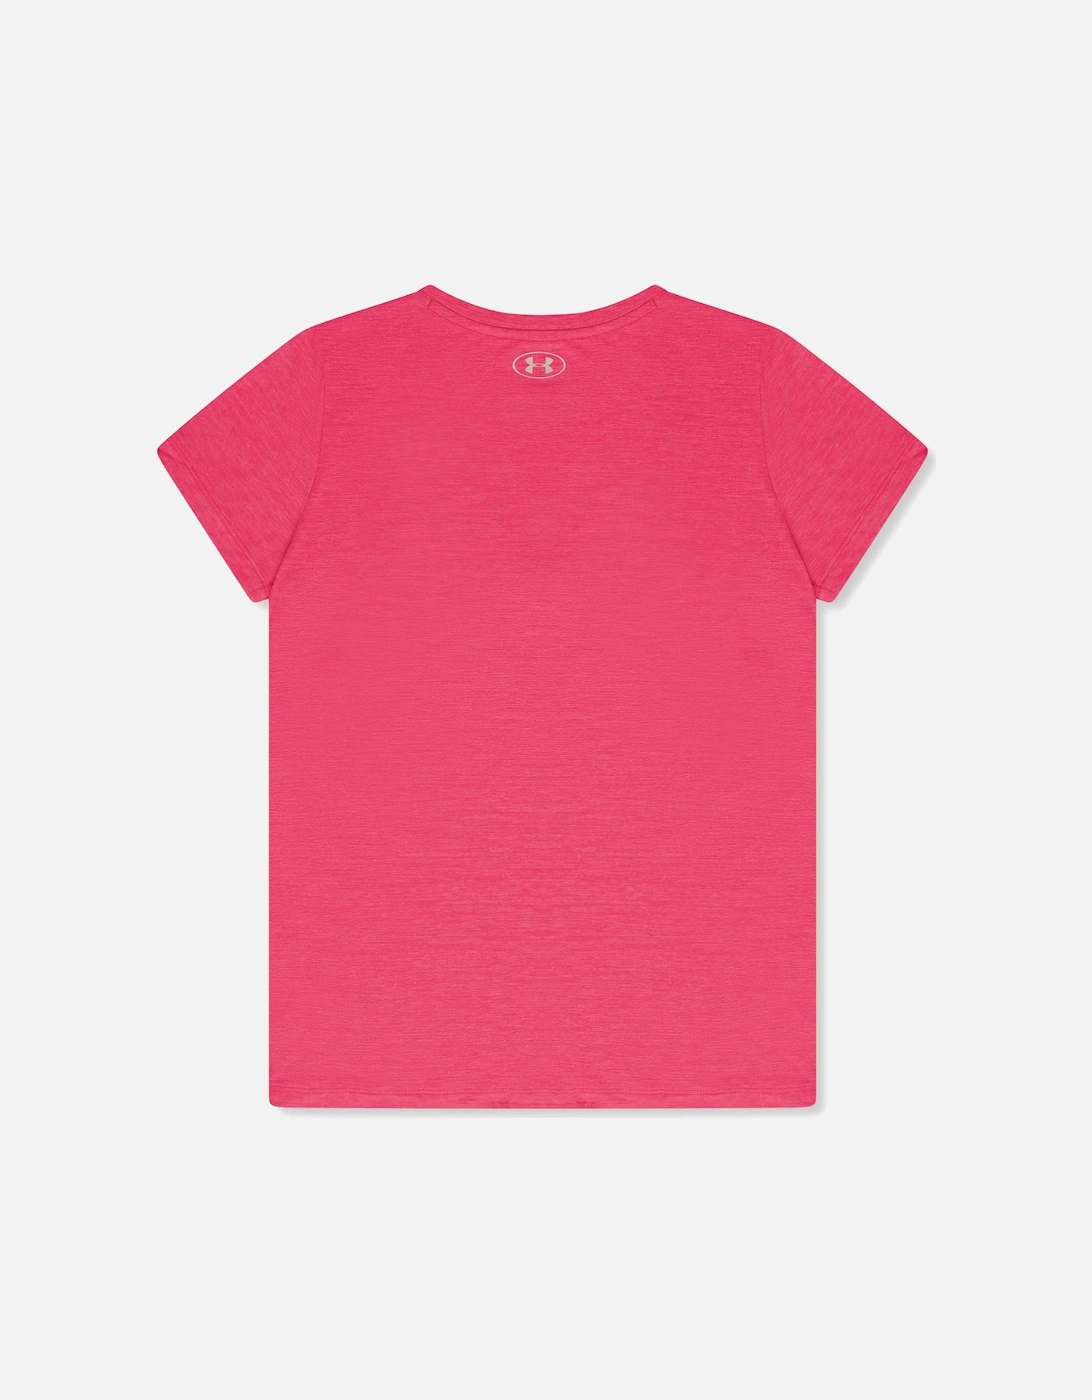 Womens Tech Twist T-Shirt (Pink)